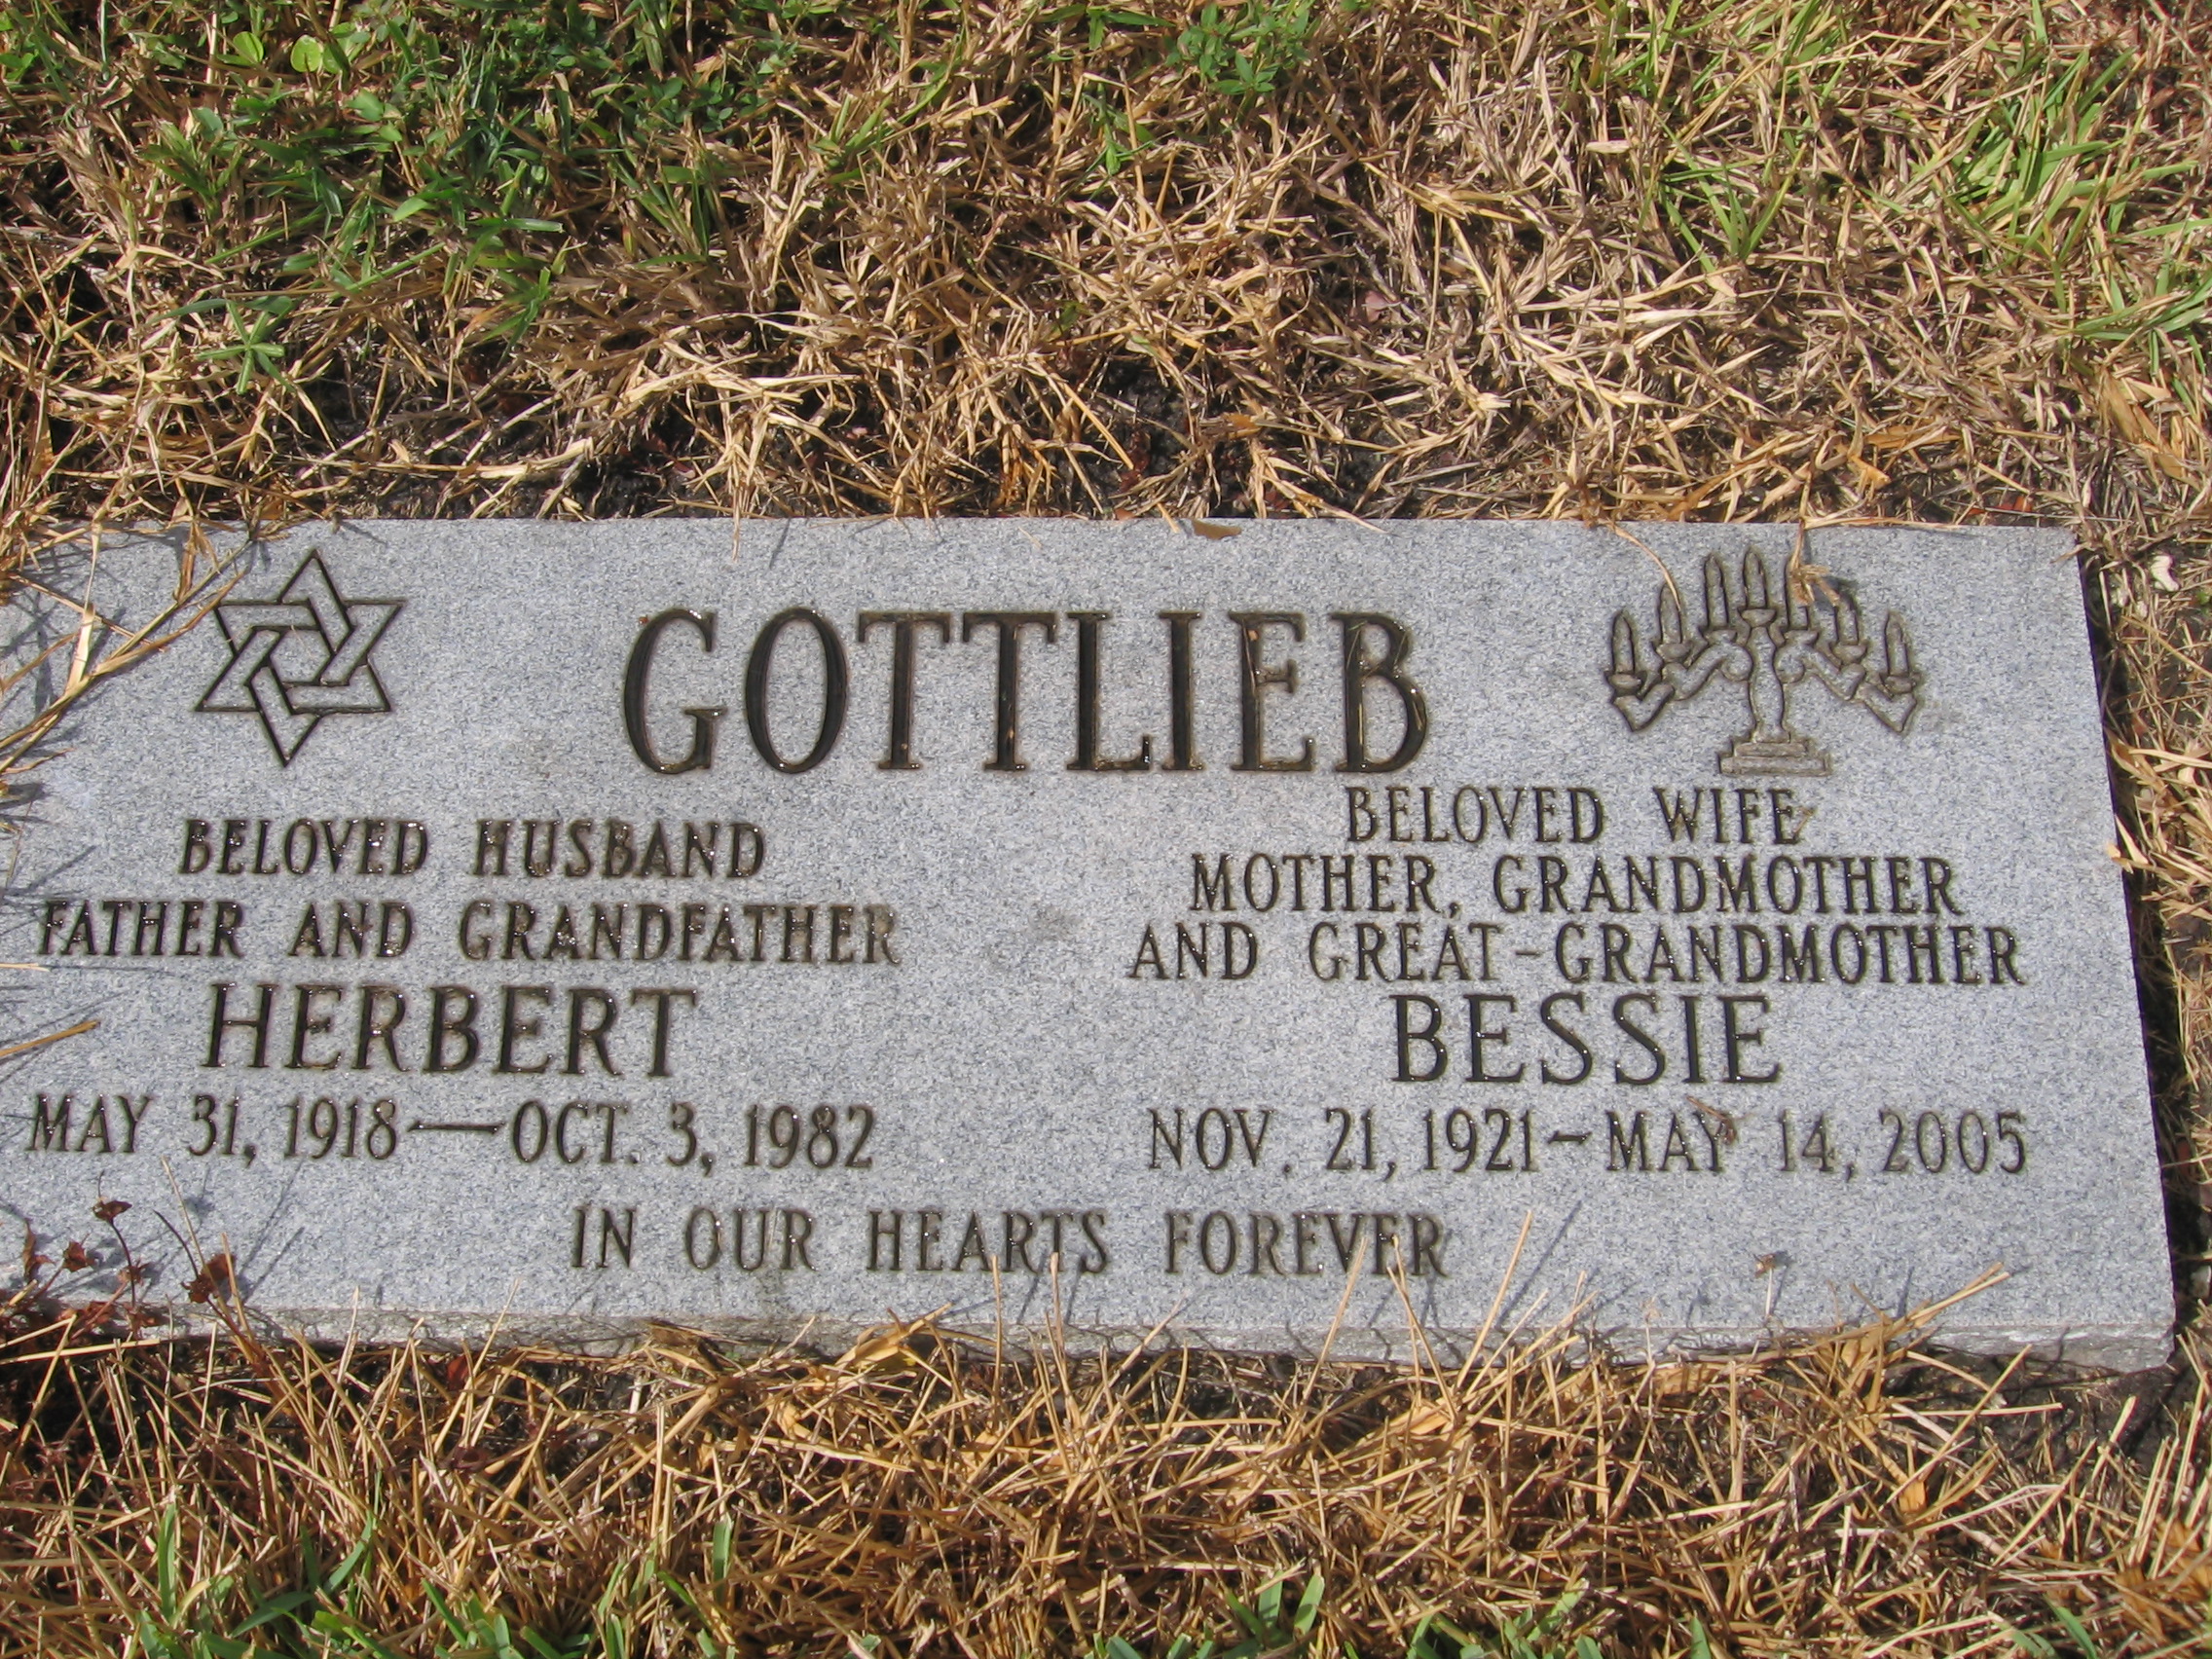 Bessie Gottlieb